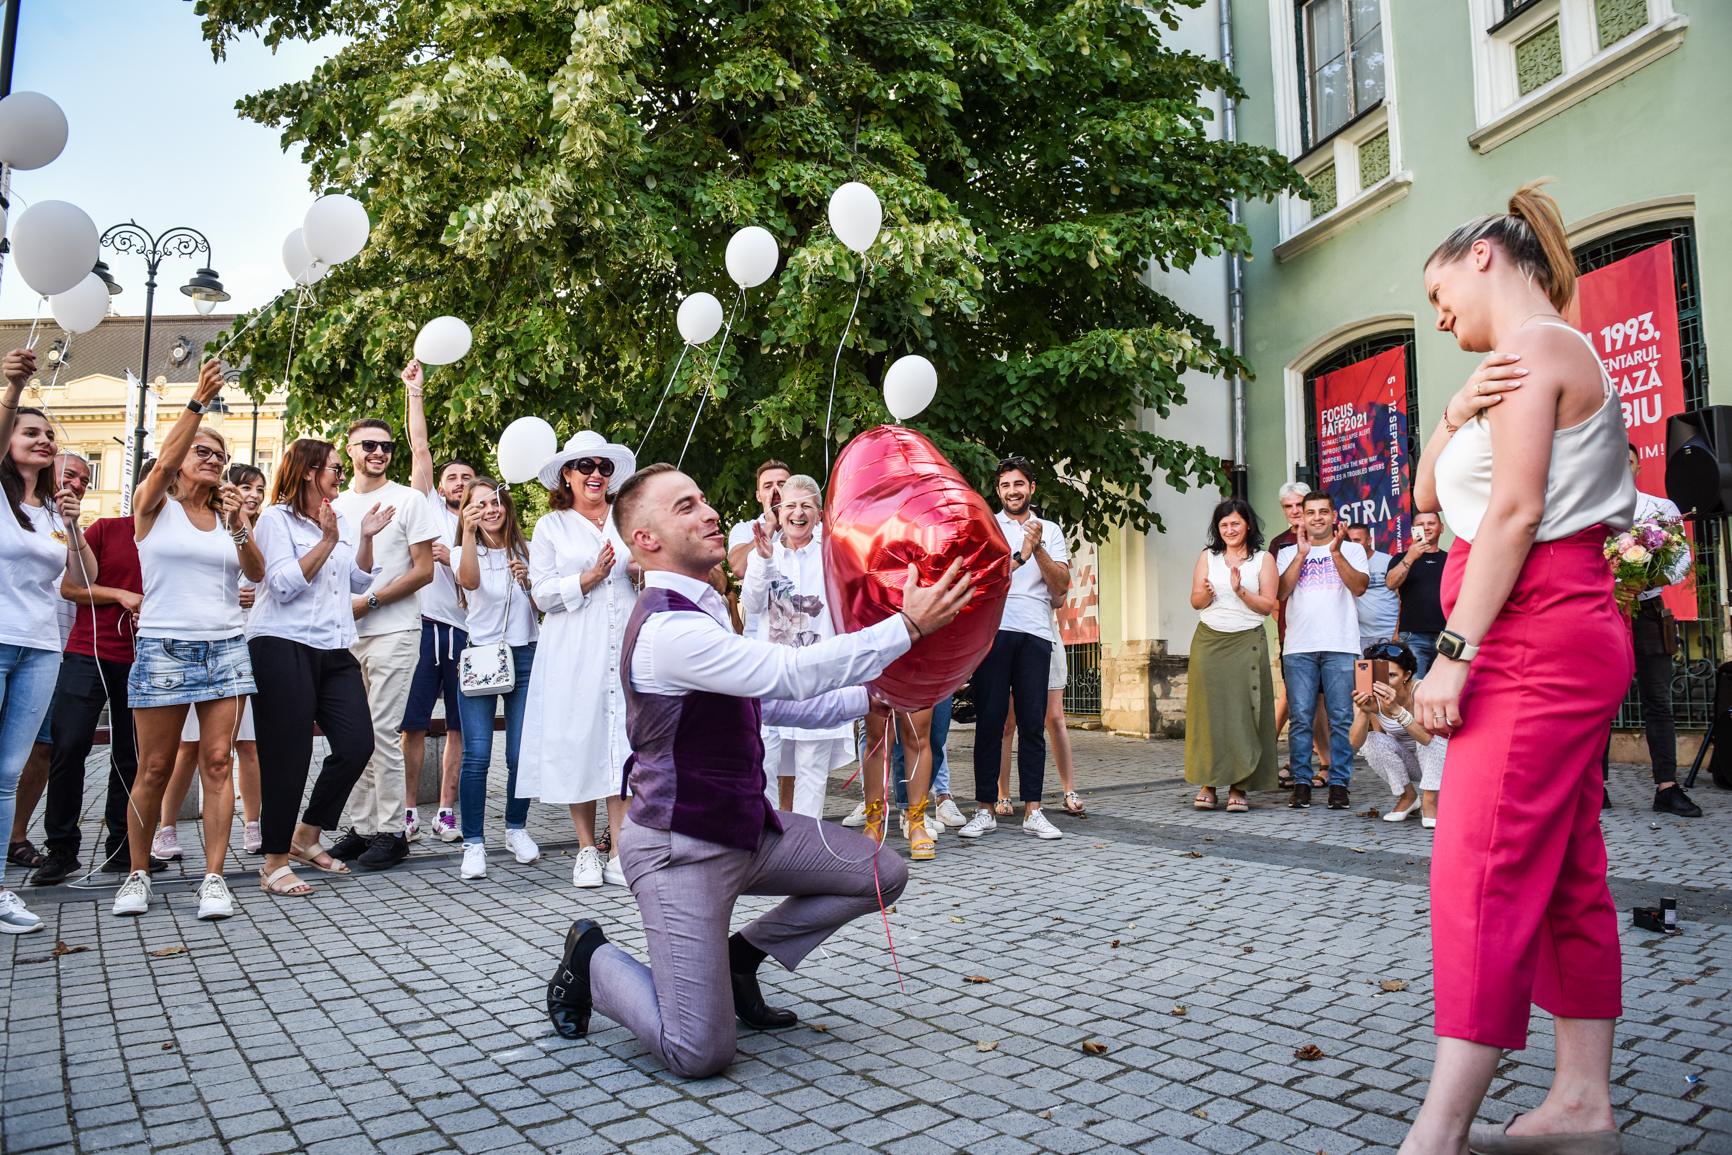 FOTO VIDEO Cerere inedită în căsătorie în Piața Mică. Dans, muzică și baloane albe